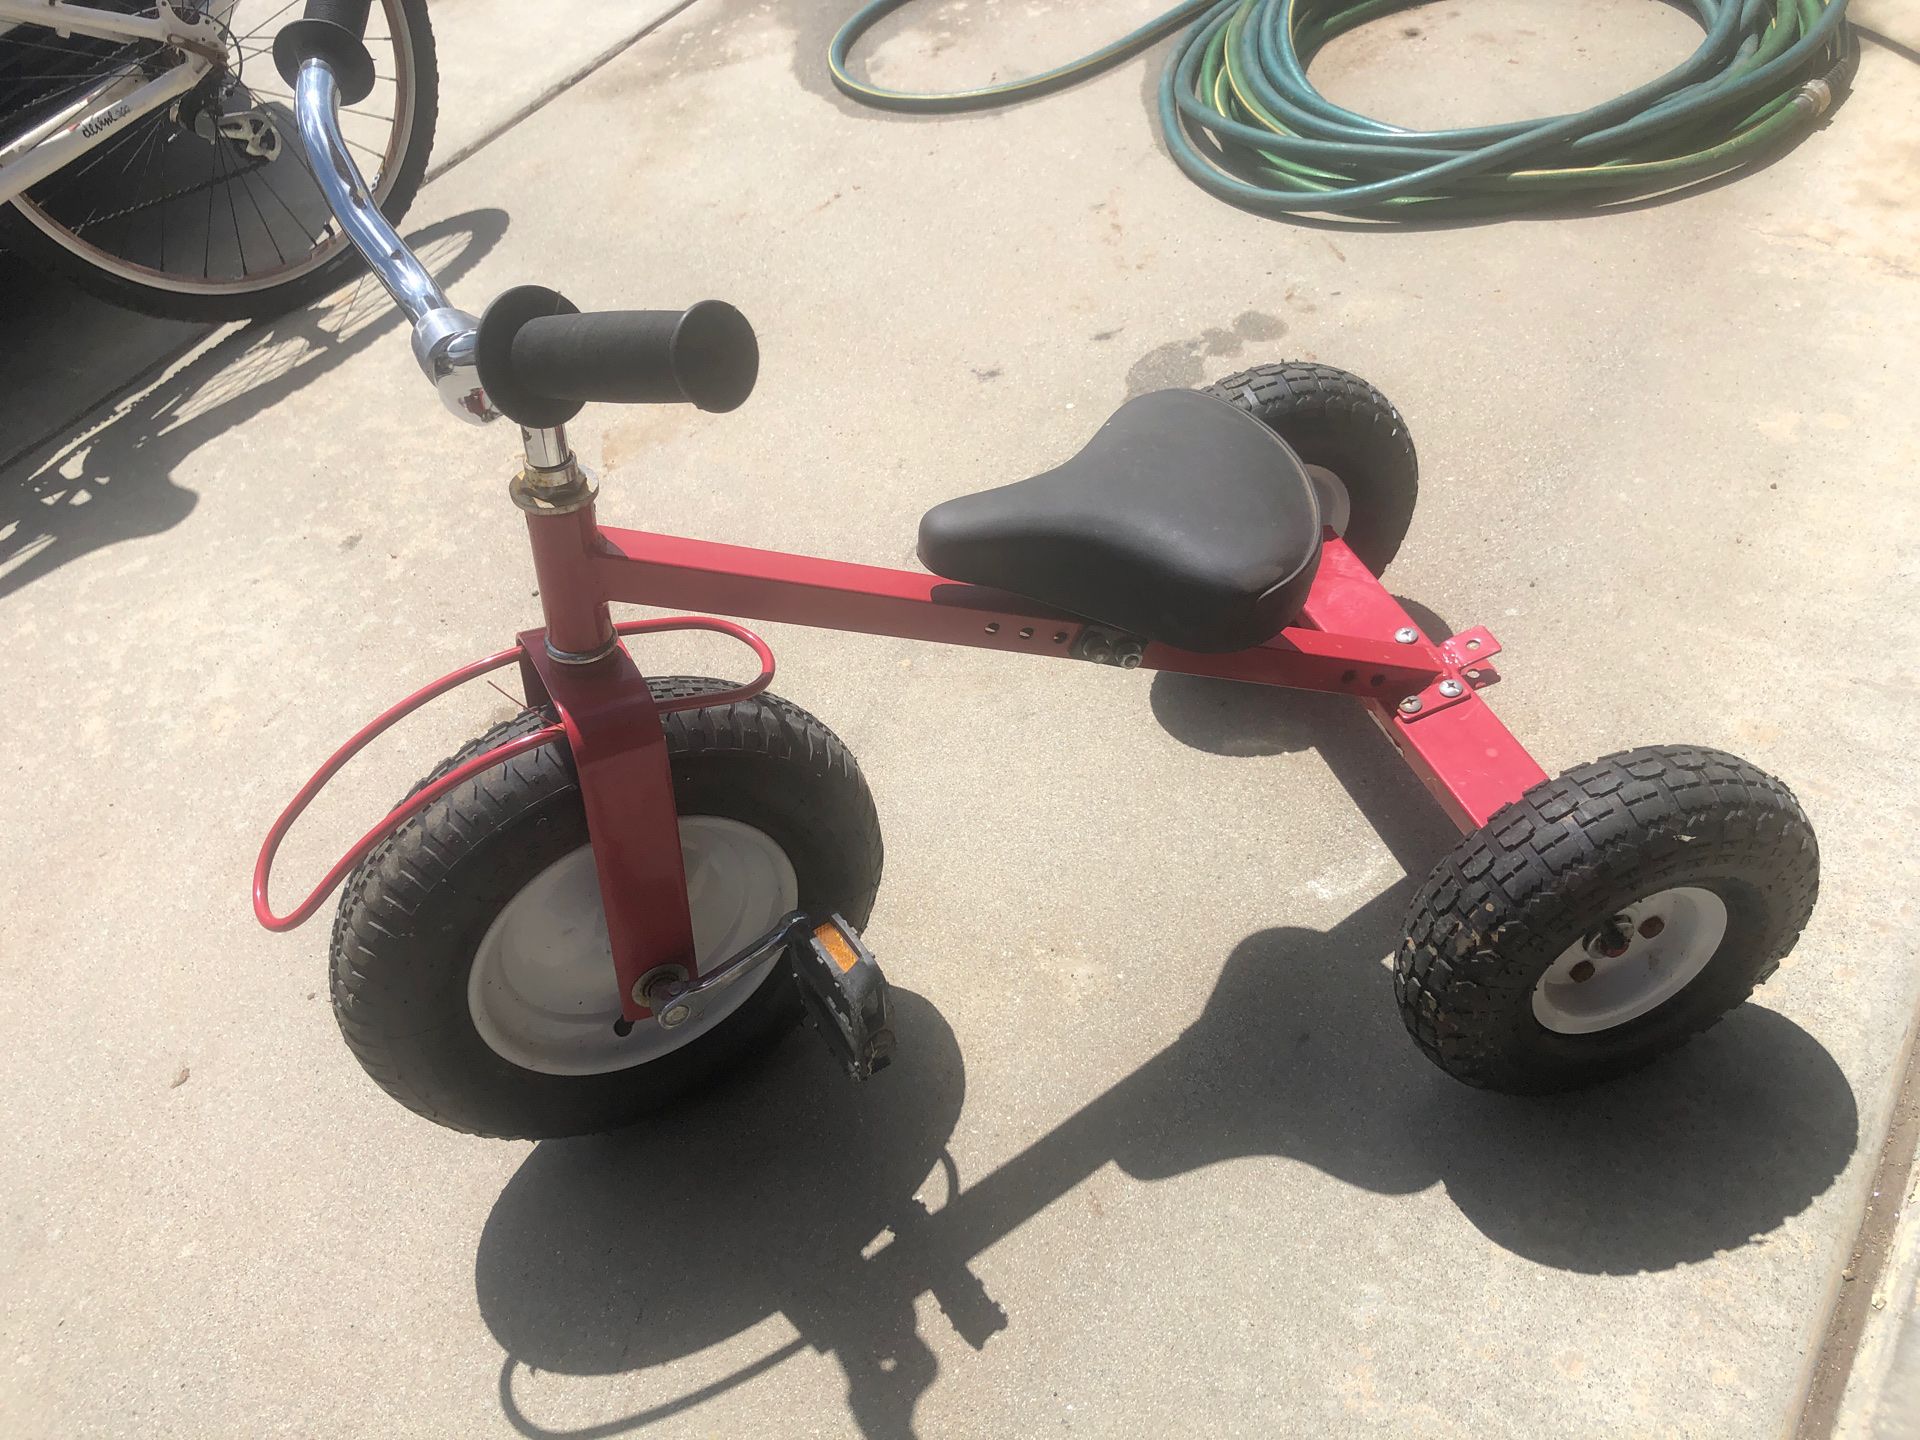 Red 3 wheeler tricycle / repair / $10